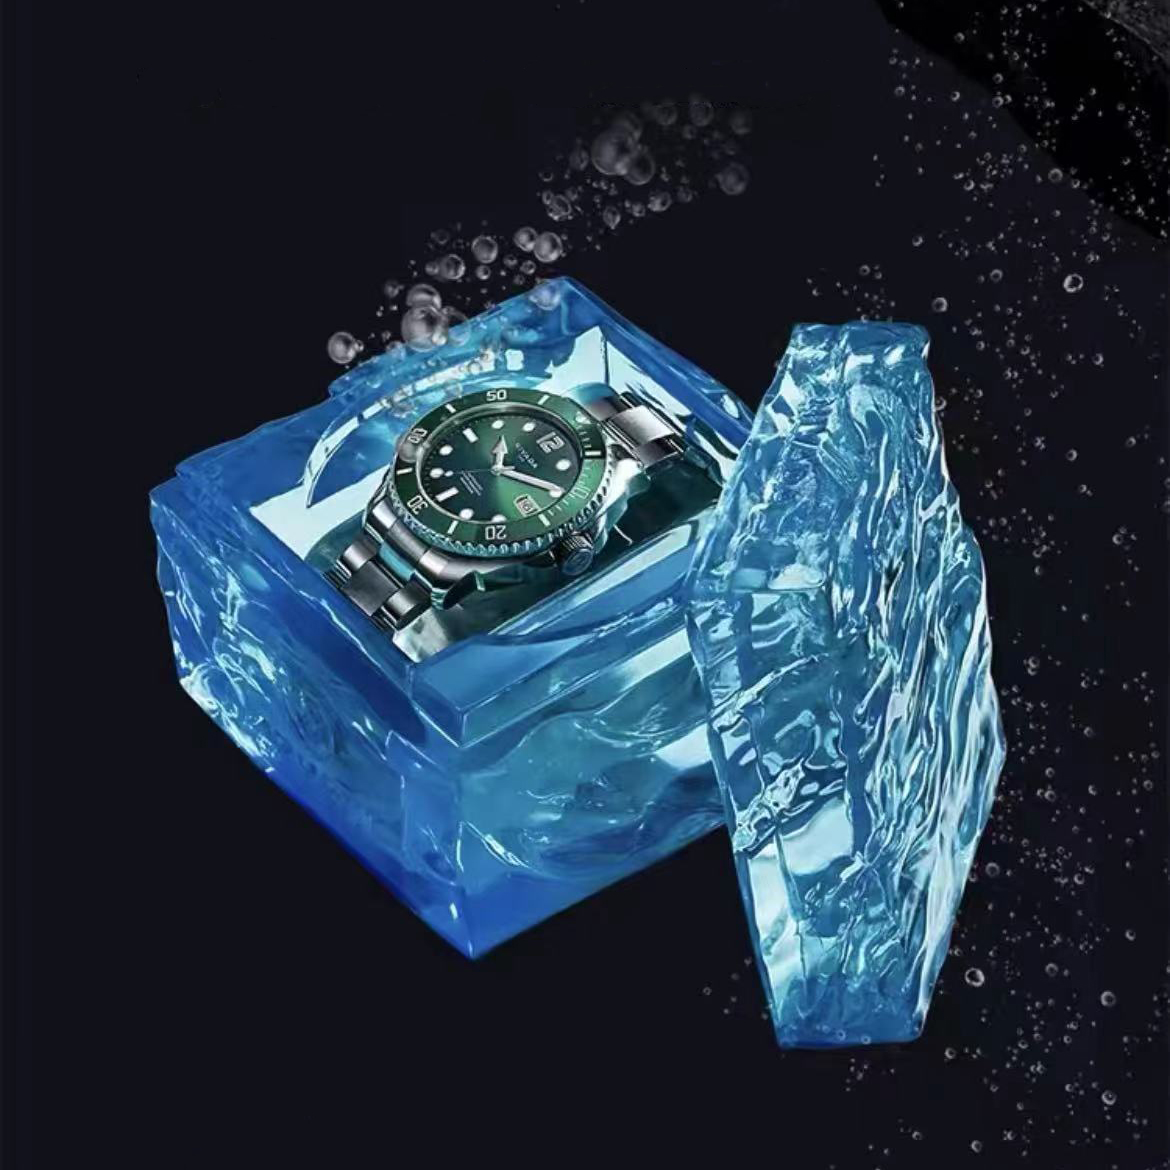 尼维达 NIVADA 智达系列 N936172421056 300M潜水夜光绿水鬼 自动机械钢带手表 机械 男款